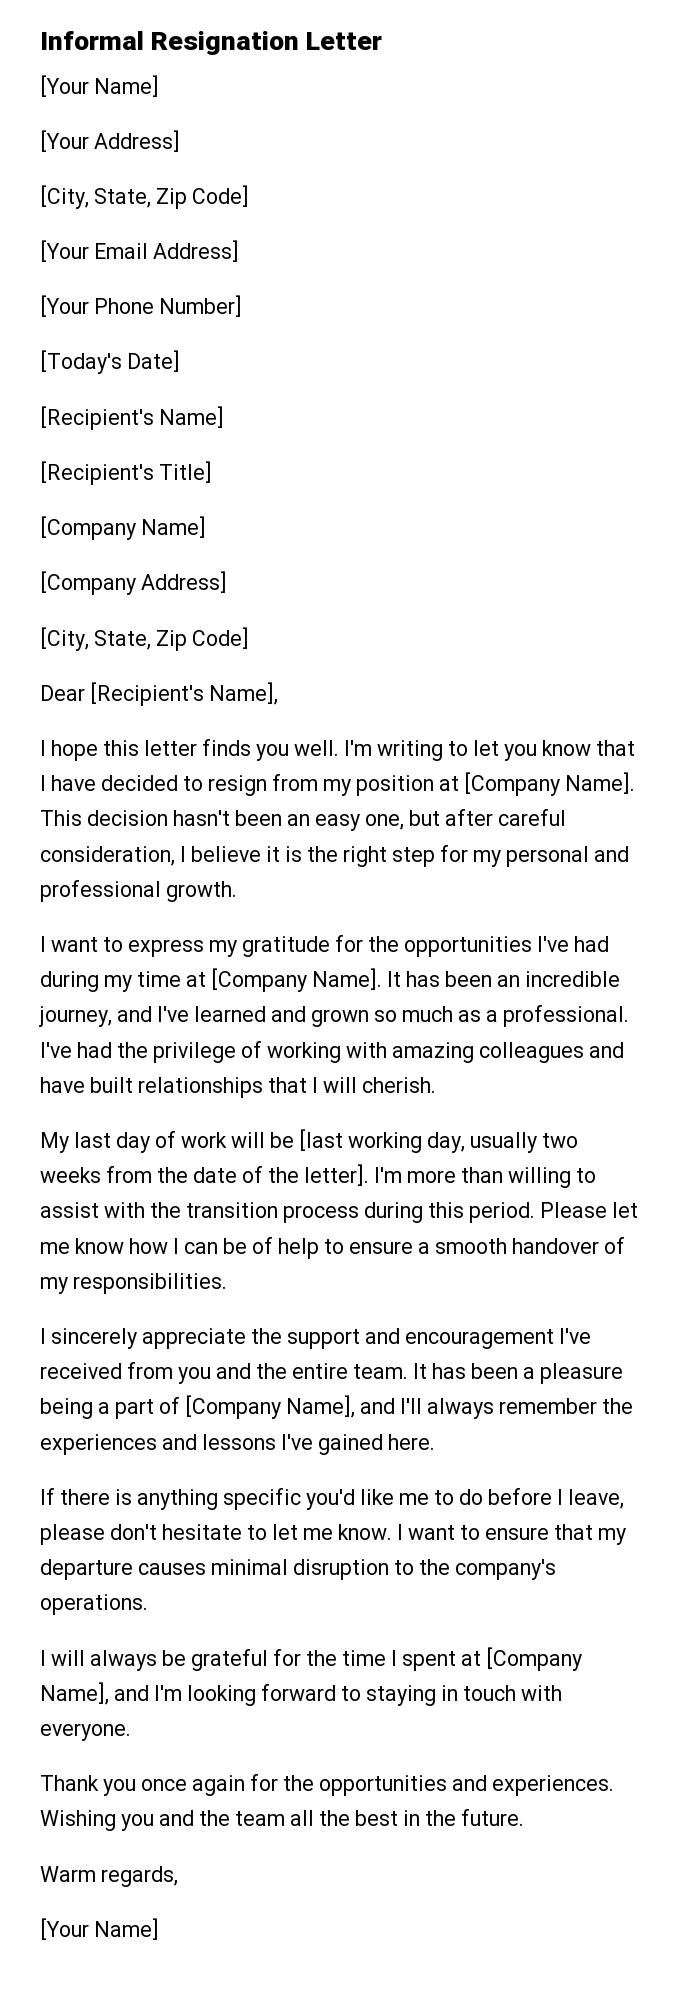 Informal Resignation Letter